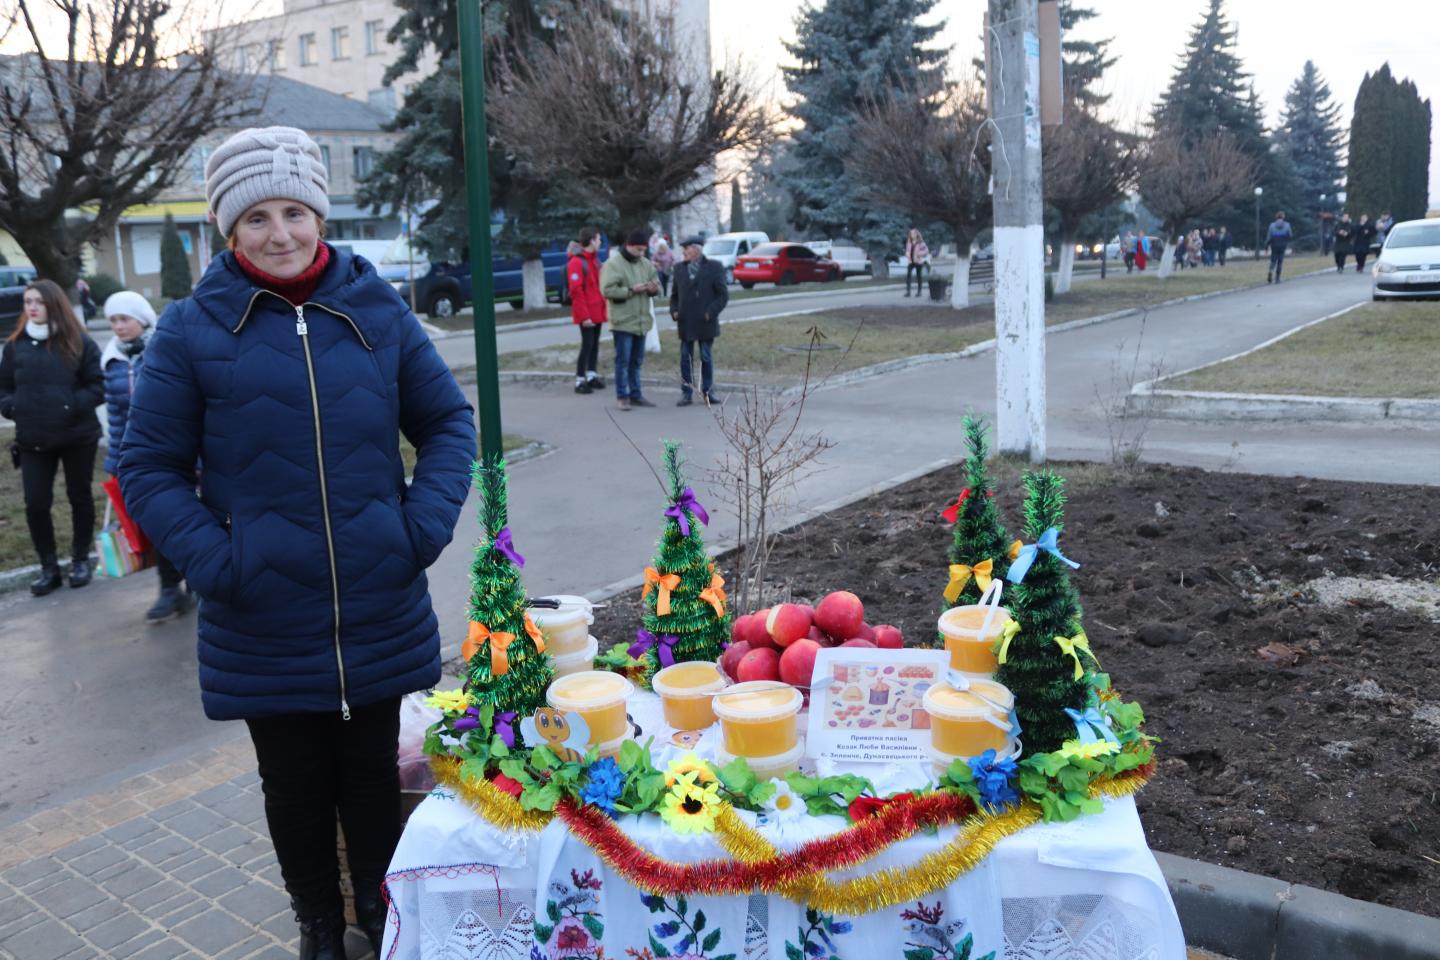 http://dunrada.gov.ua/uploadfile/archive_news/2019/12/19/2019-12-19_8595/images/images-67882.jpg